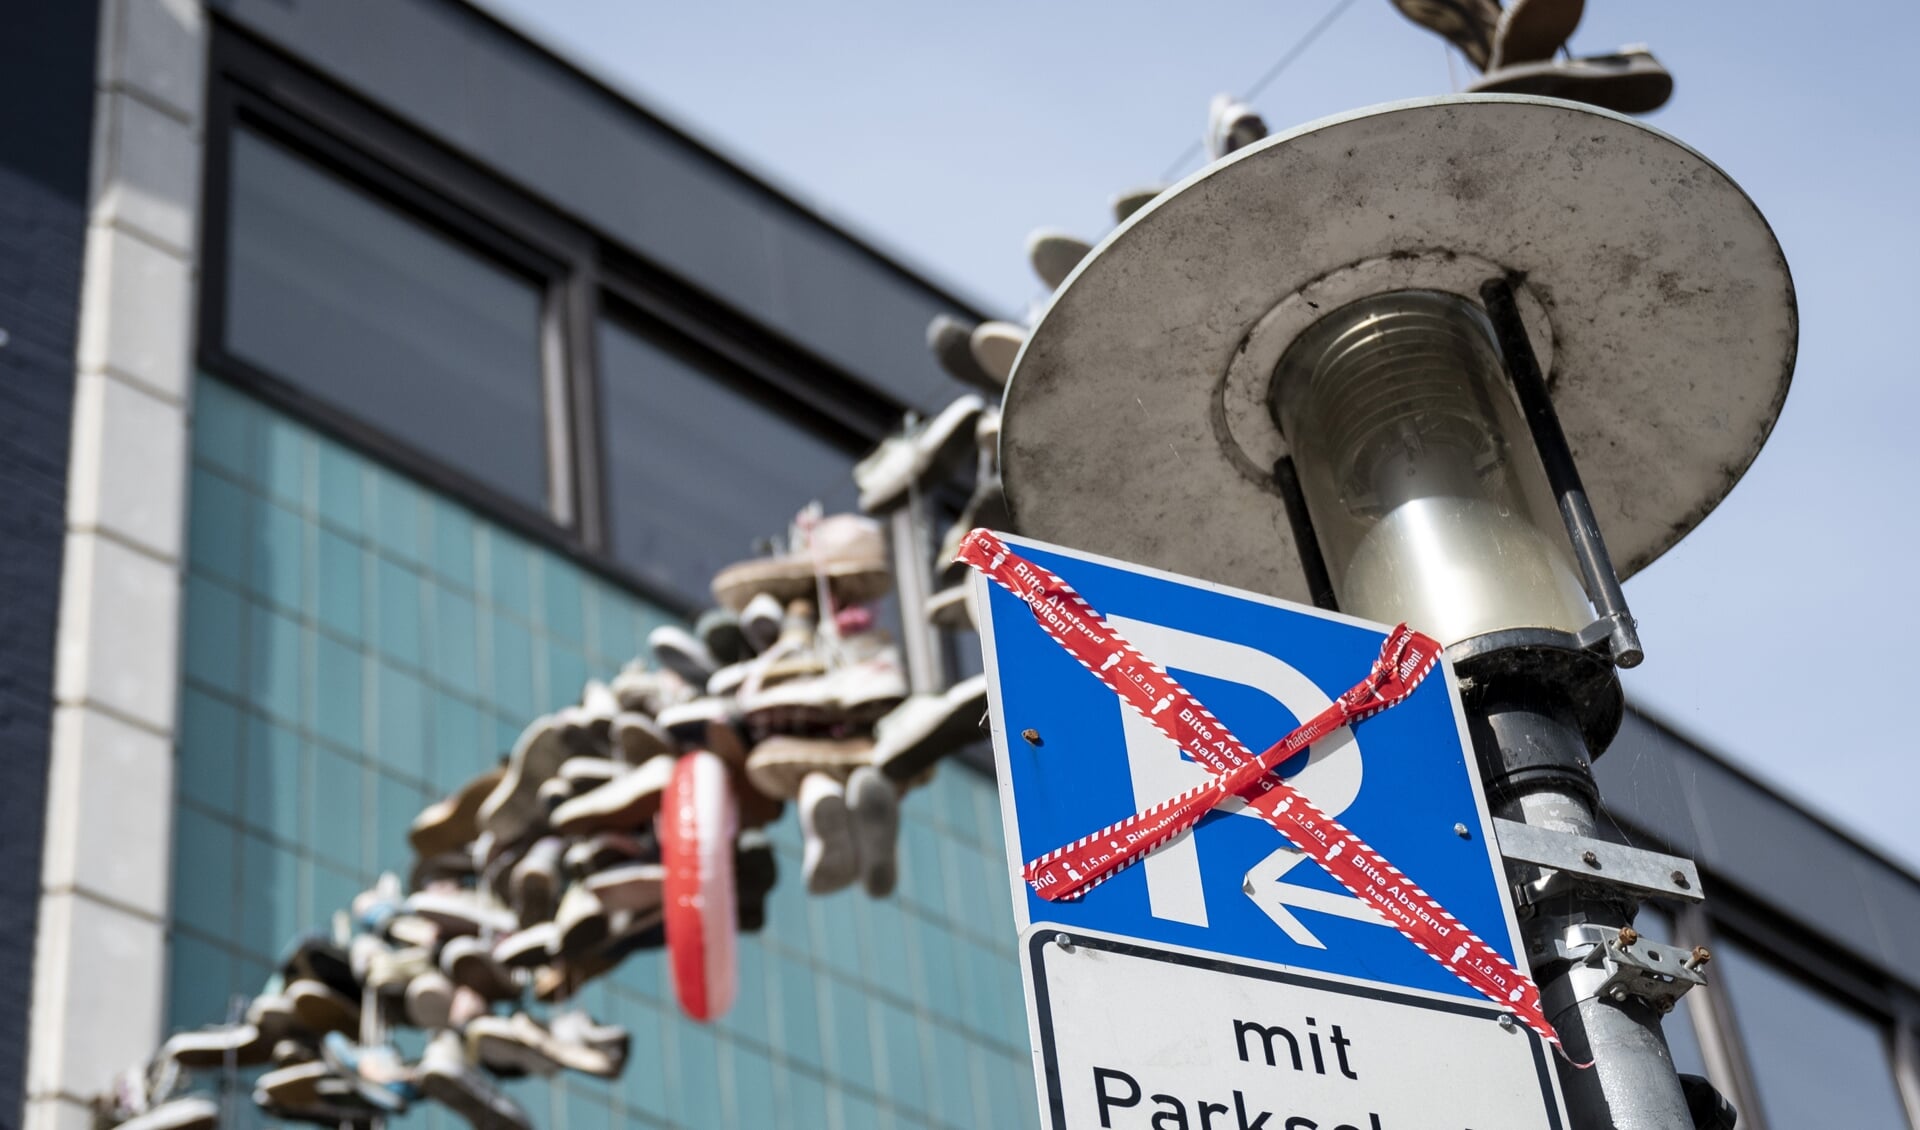 Um den ruhenden Verkehr aus der Norderstraße zu verbannen, wurde im Planungsausschuss ein umfangreiches Maßnahmenpaket beschlossen. 